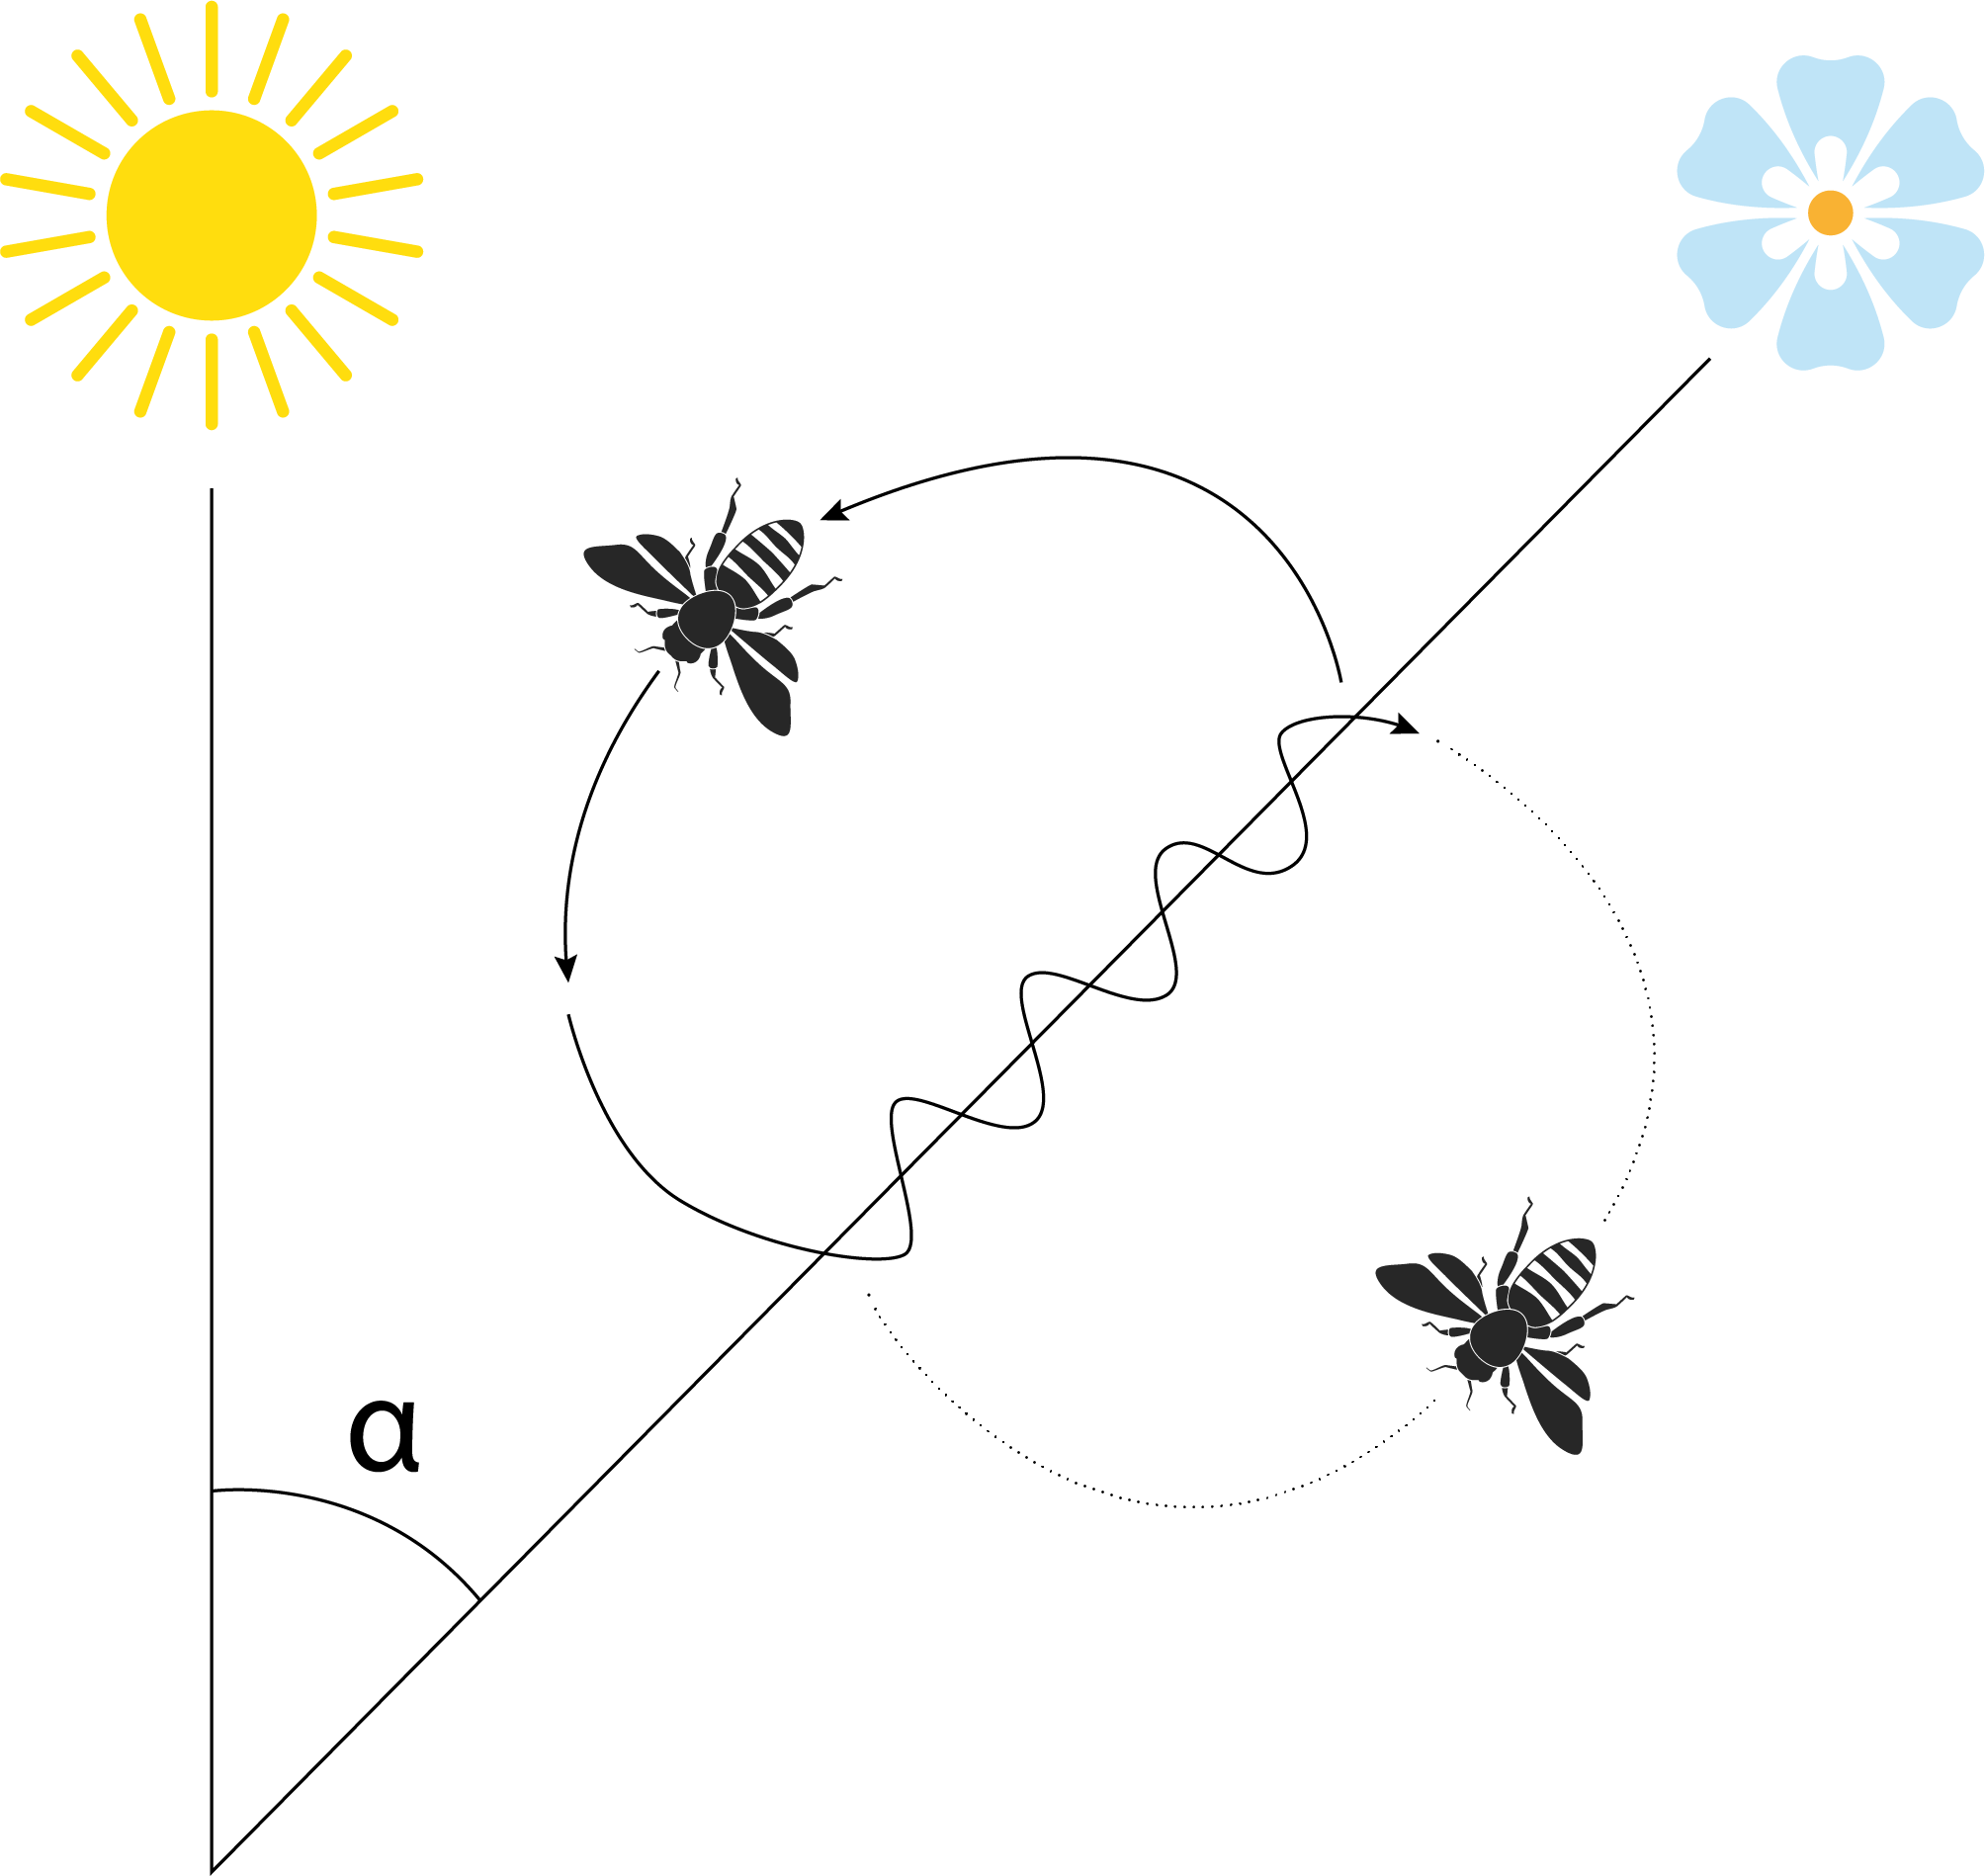 Représentation graphique de la danse frétillante des abeilles. De haut en bas, la différence d'angle entre l'emplacement de la source de nourriture et l'azimut du soleil par rapport à l'emplacement de la ruche est notée α. Cette information est utilisée par les abeilles butineuses pour déterminer l'angle de leur danse frétillante dans la ruche, par rapport à la direction de la gravité.